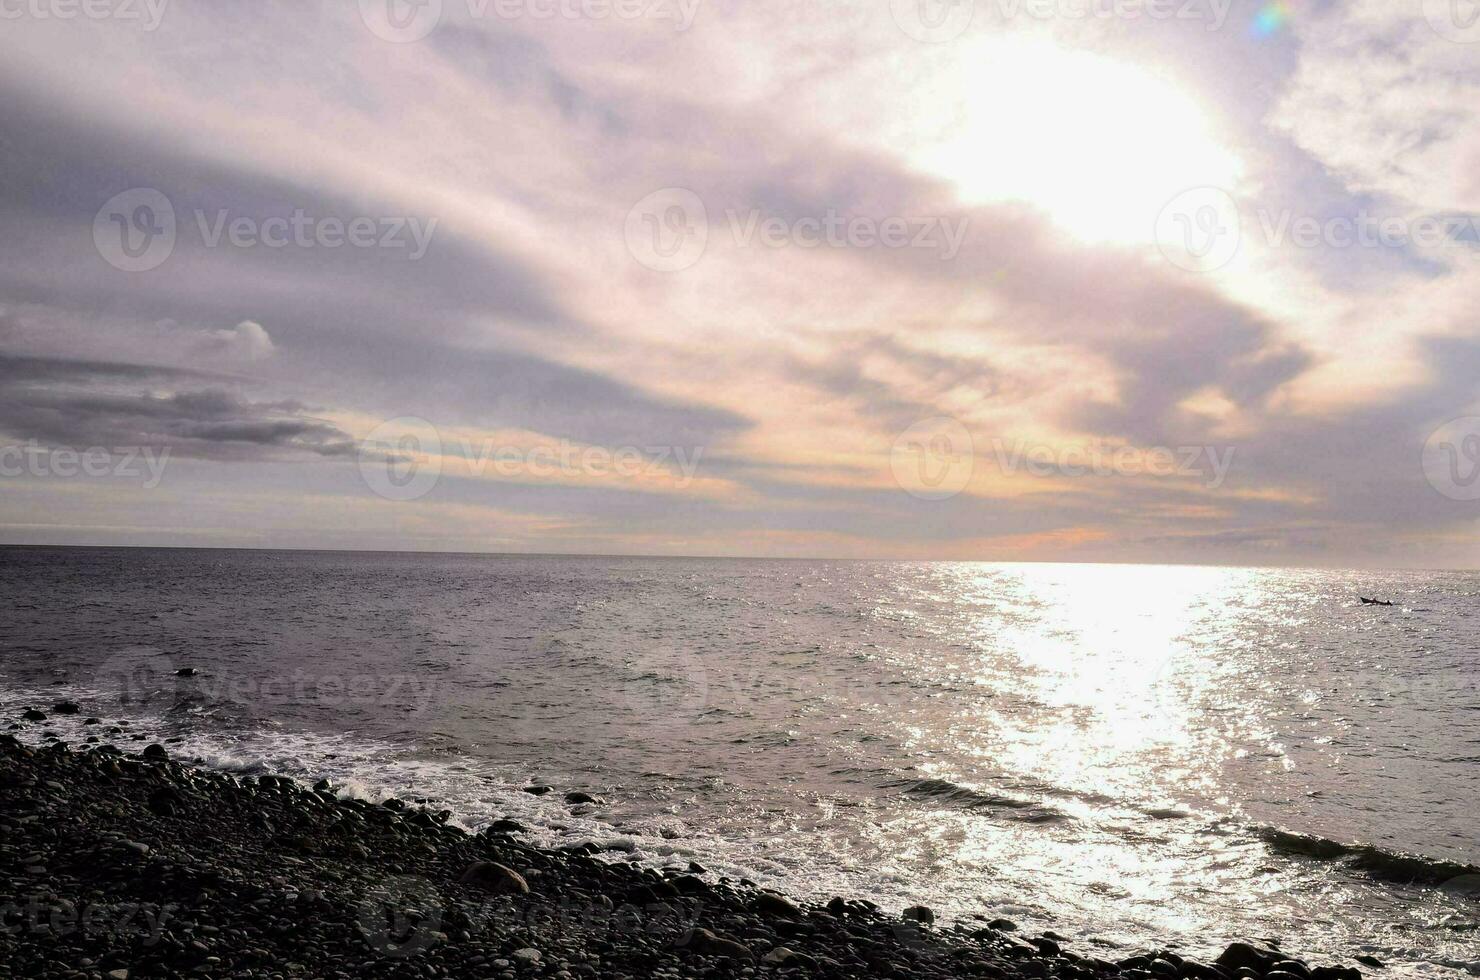 coucher de soleil sur l'océan photo